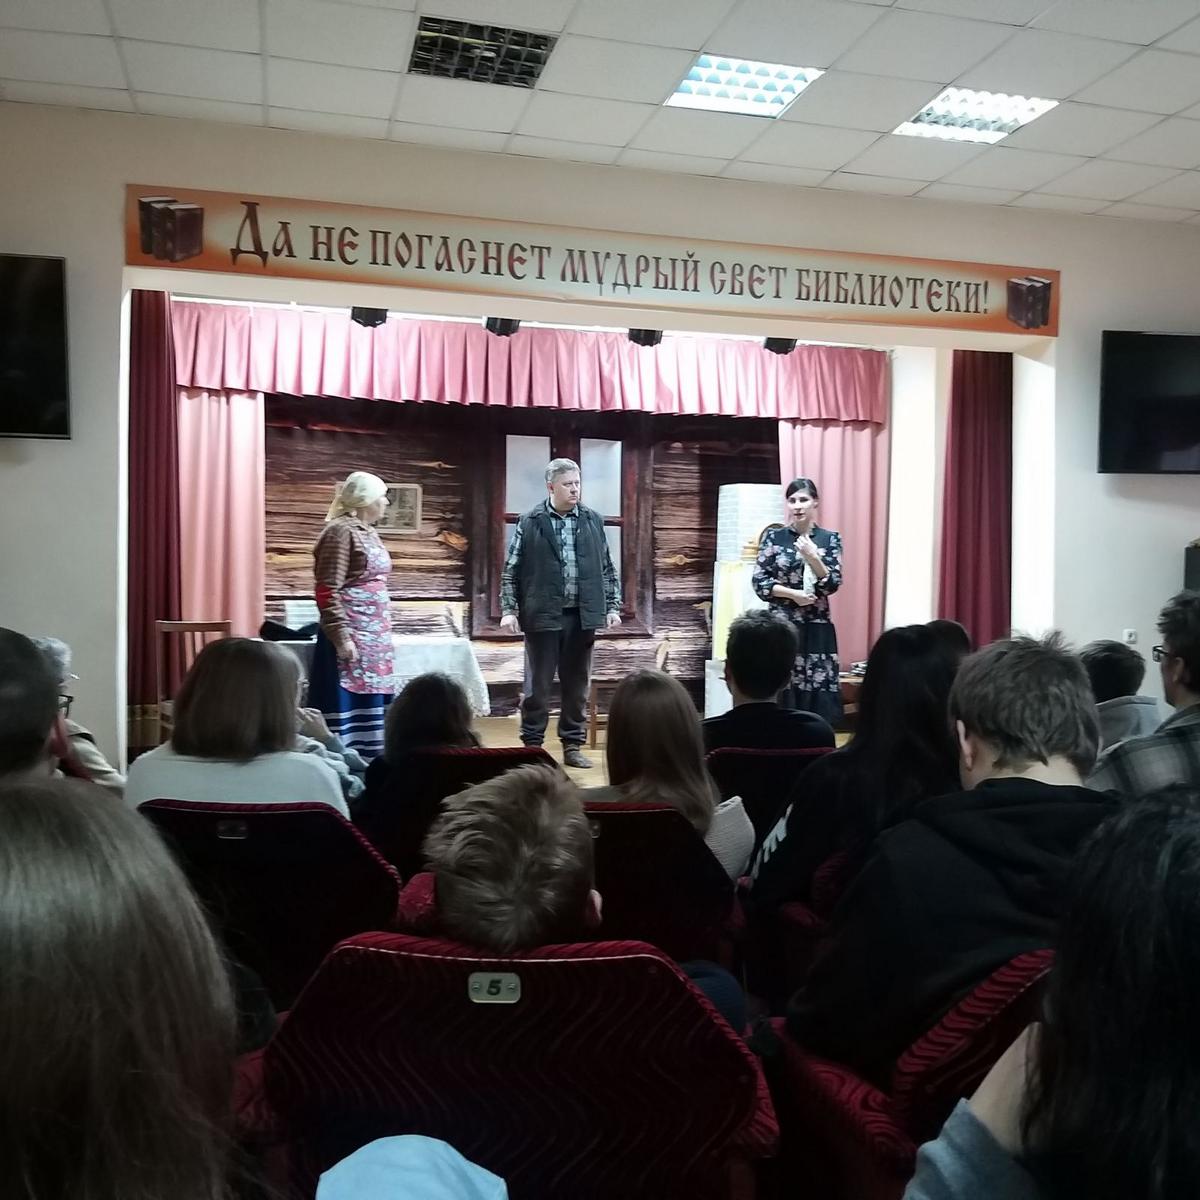 5 Группа НР-31 посетила библиотечный народный любительский театр "Грачи"